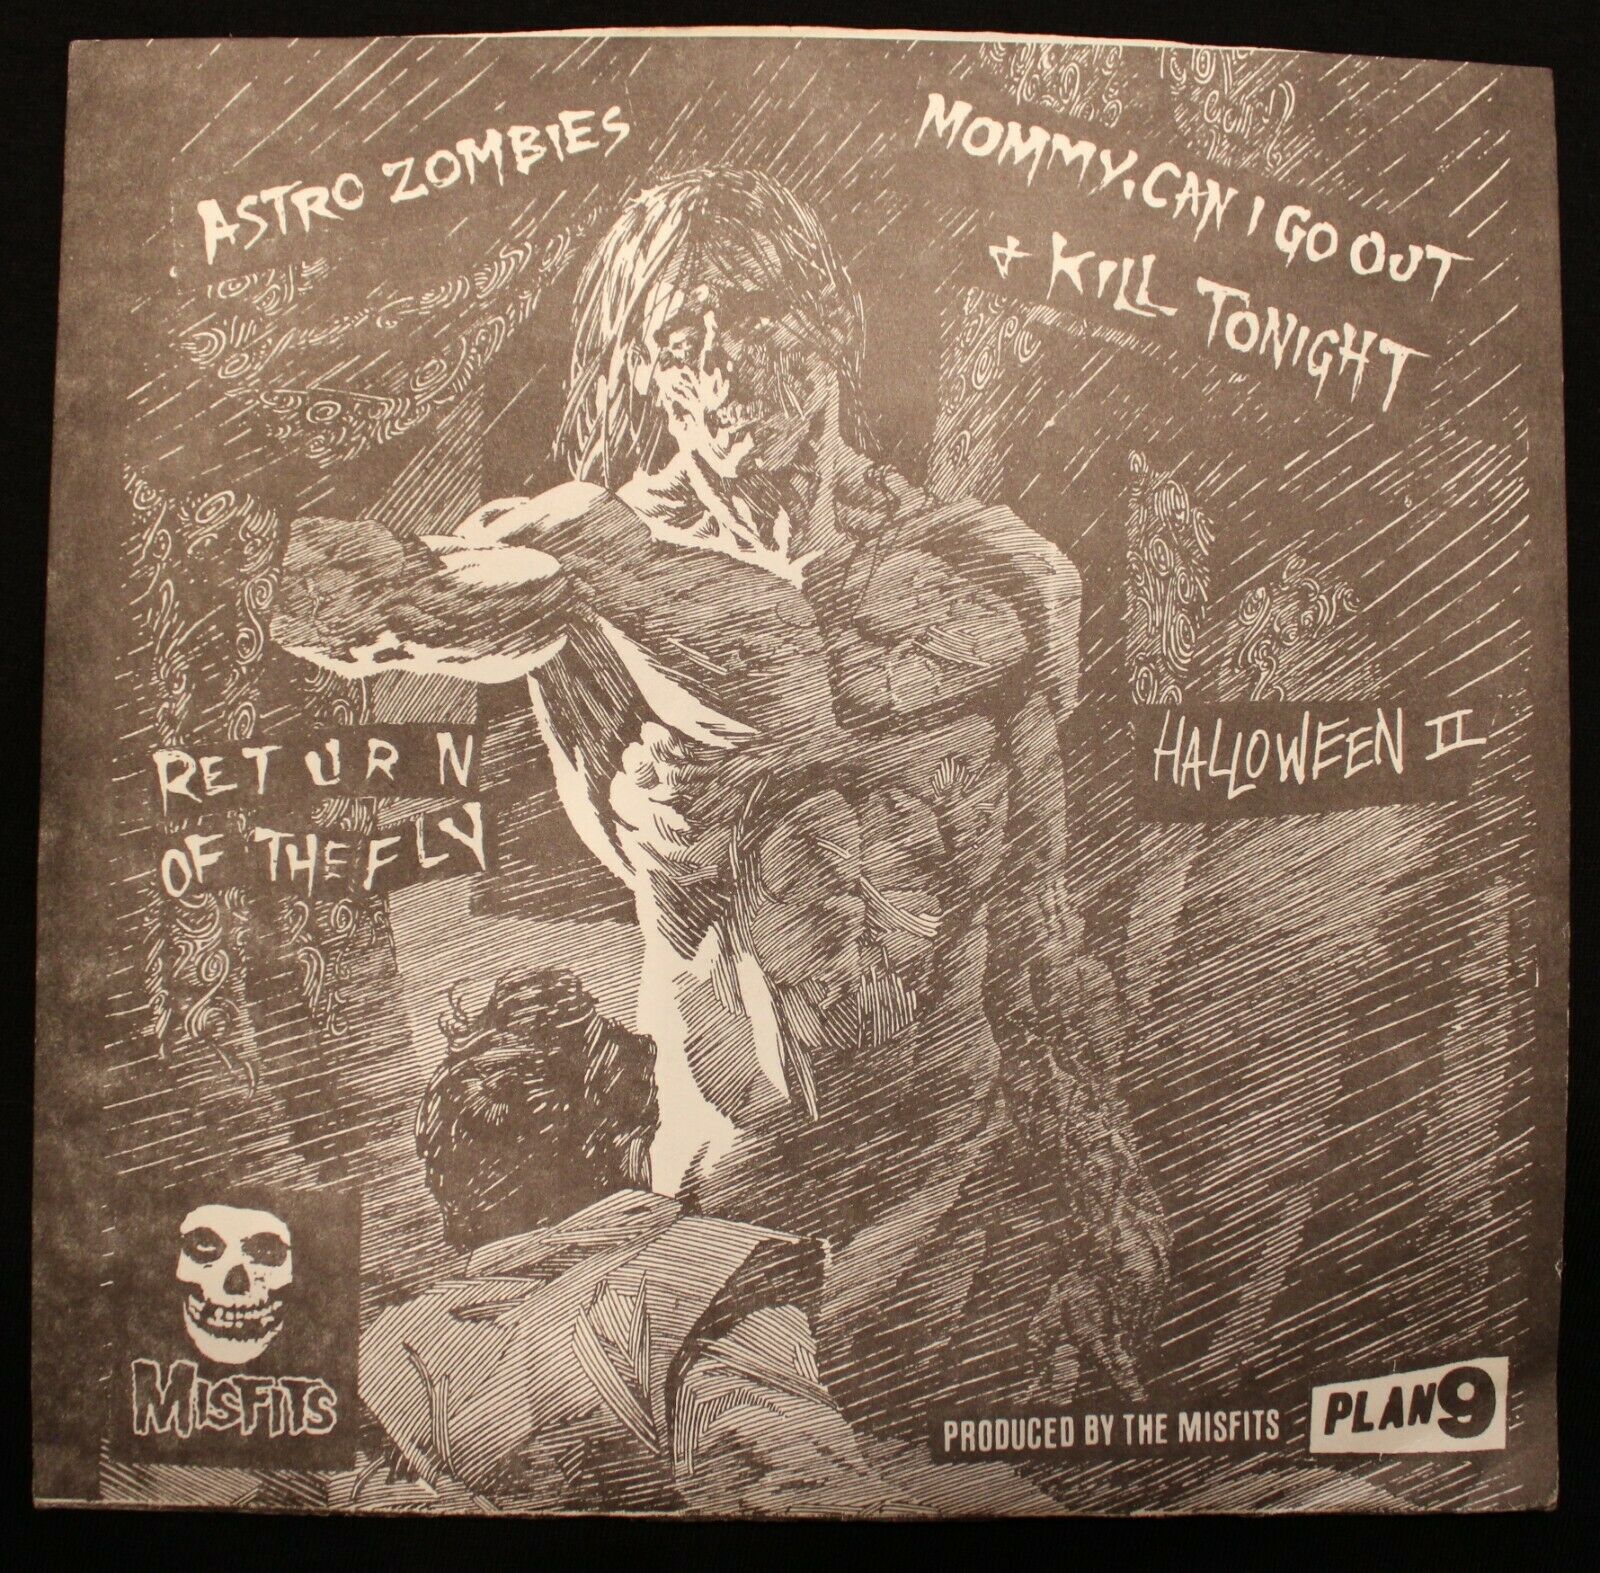 popsike.com - The Misfits - Astro Zombies E.P. very rare bootleg